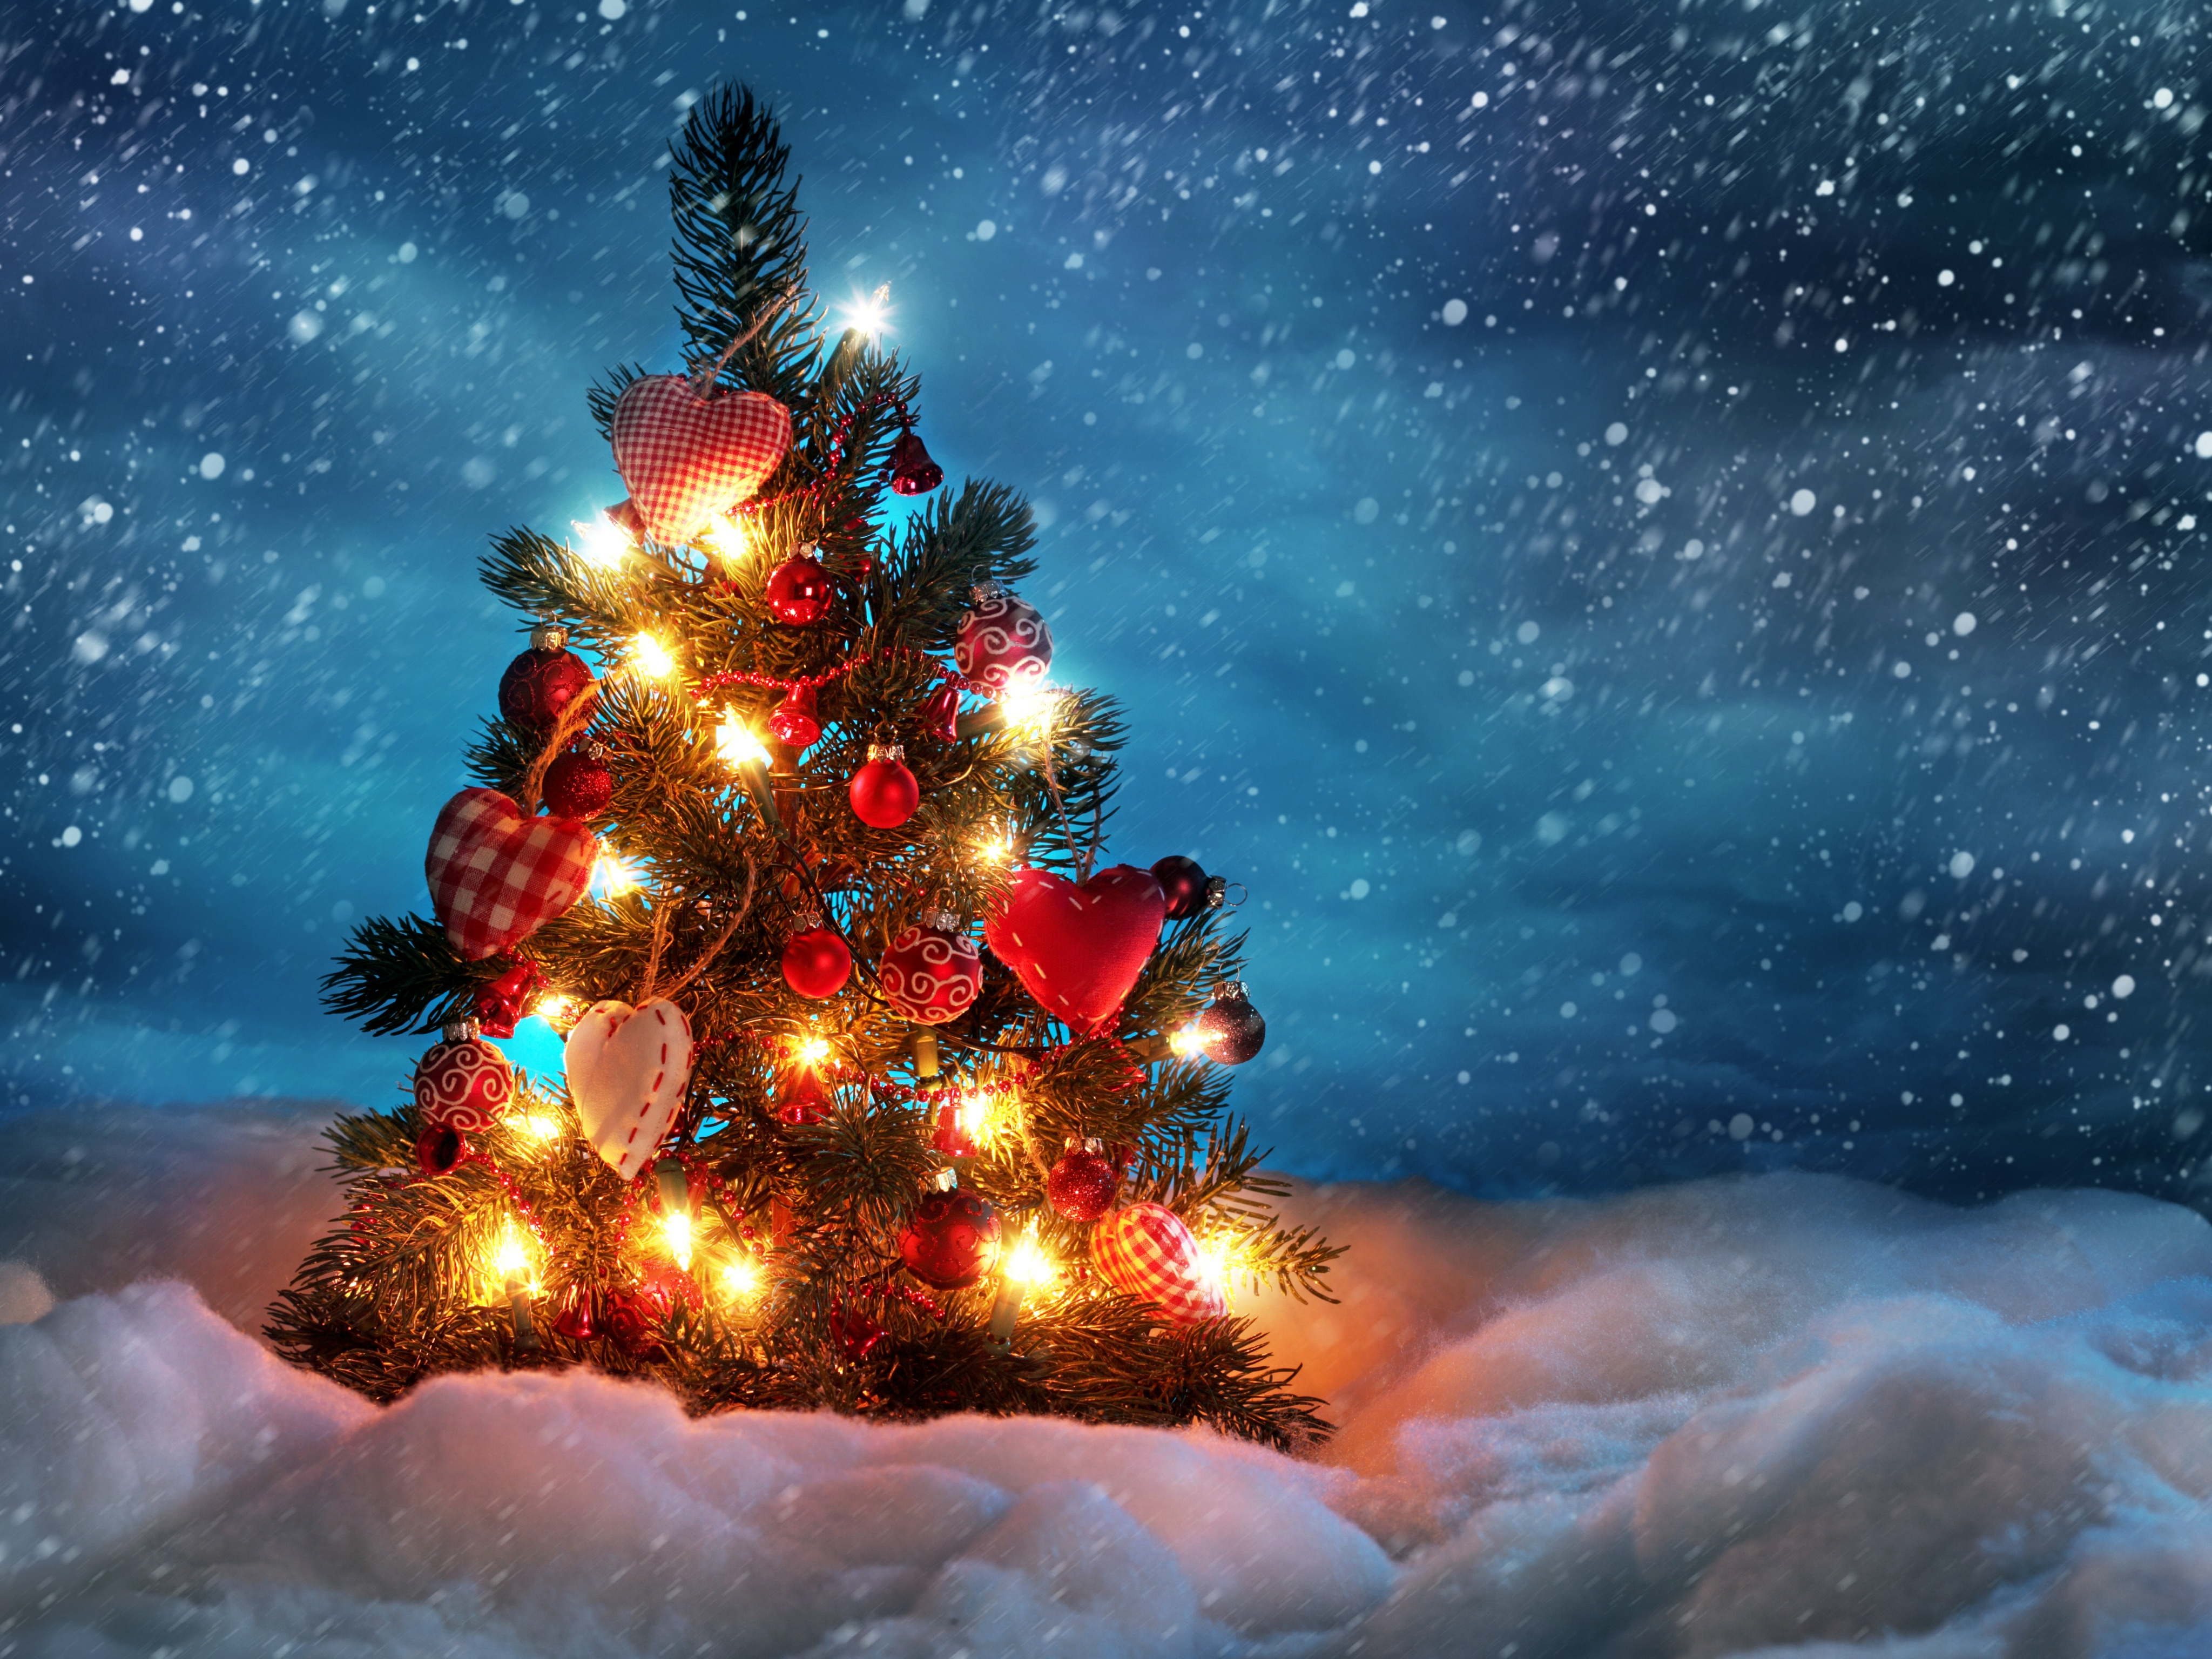 240210 免費下載壁紙 节日, 圣诞节, 圣诞灯饰, 圣诞饰品, 圣诞树, 夜晚, 雪, 降雪, 冬季 屏保和圖片